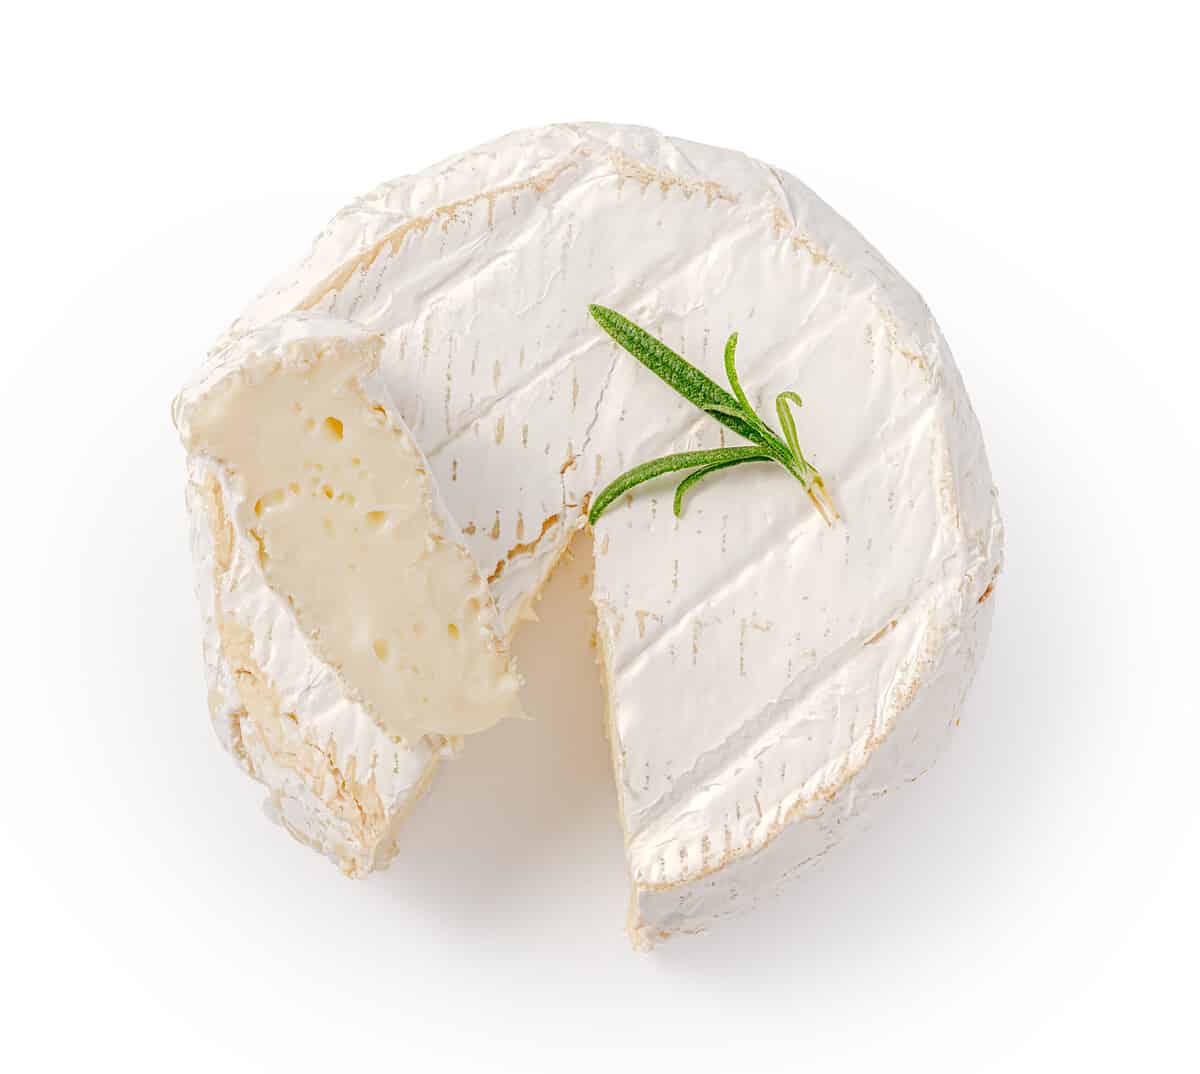 Fresh camembert cheese